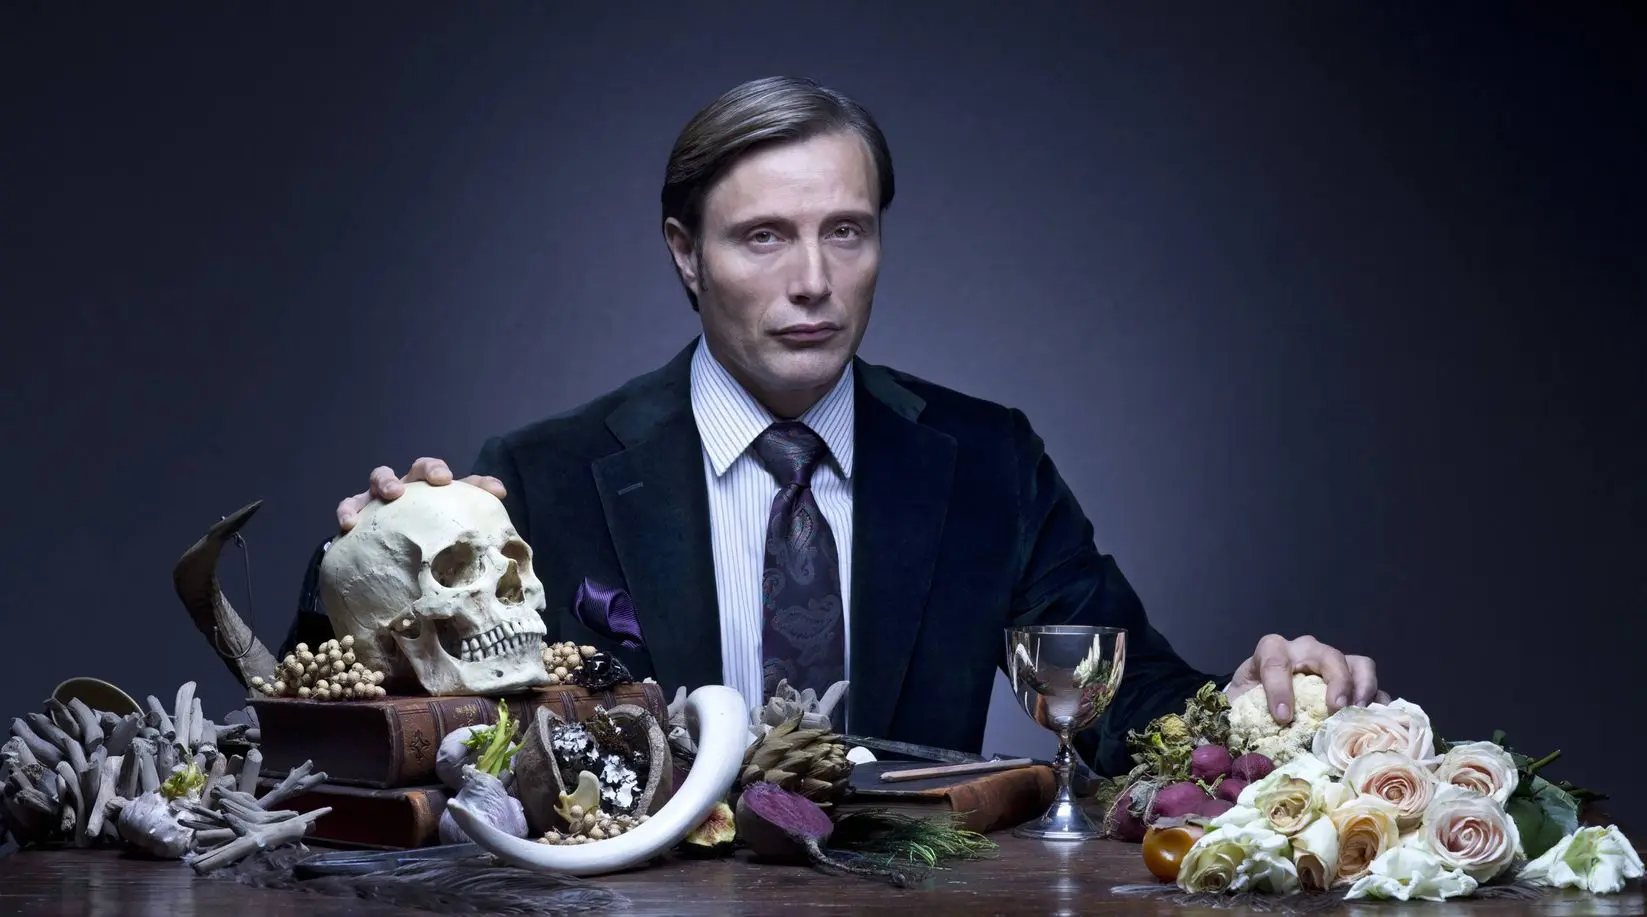 Seriál Hannibal klopýtl a stanice NBC ho bez zaváhání zrušila